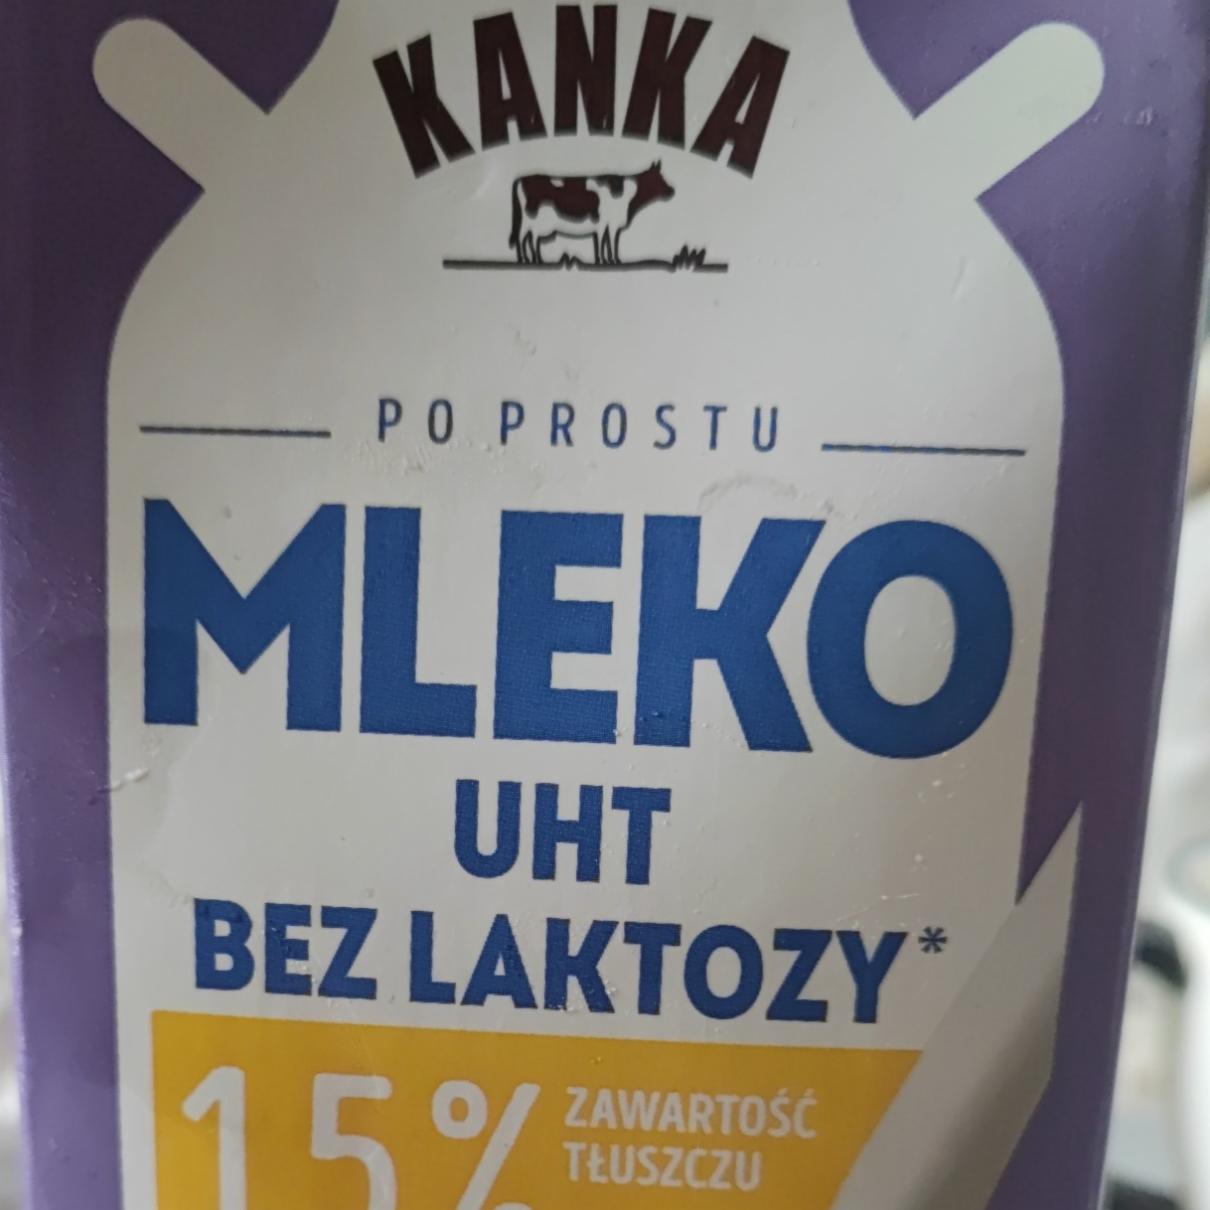 Zdjęcia - Mleko UTH bez laktozy 1,5% Kanka